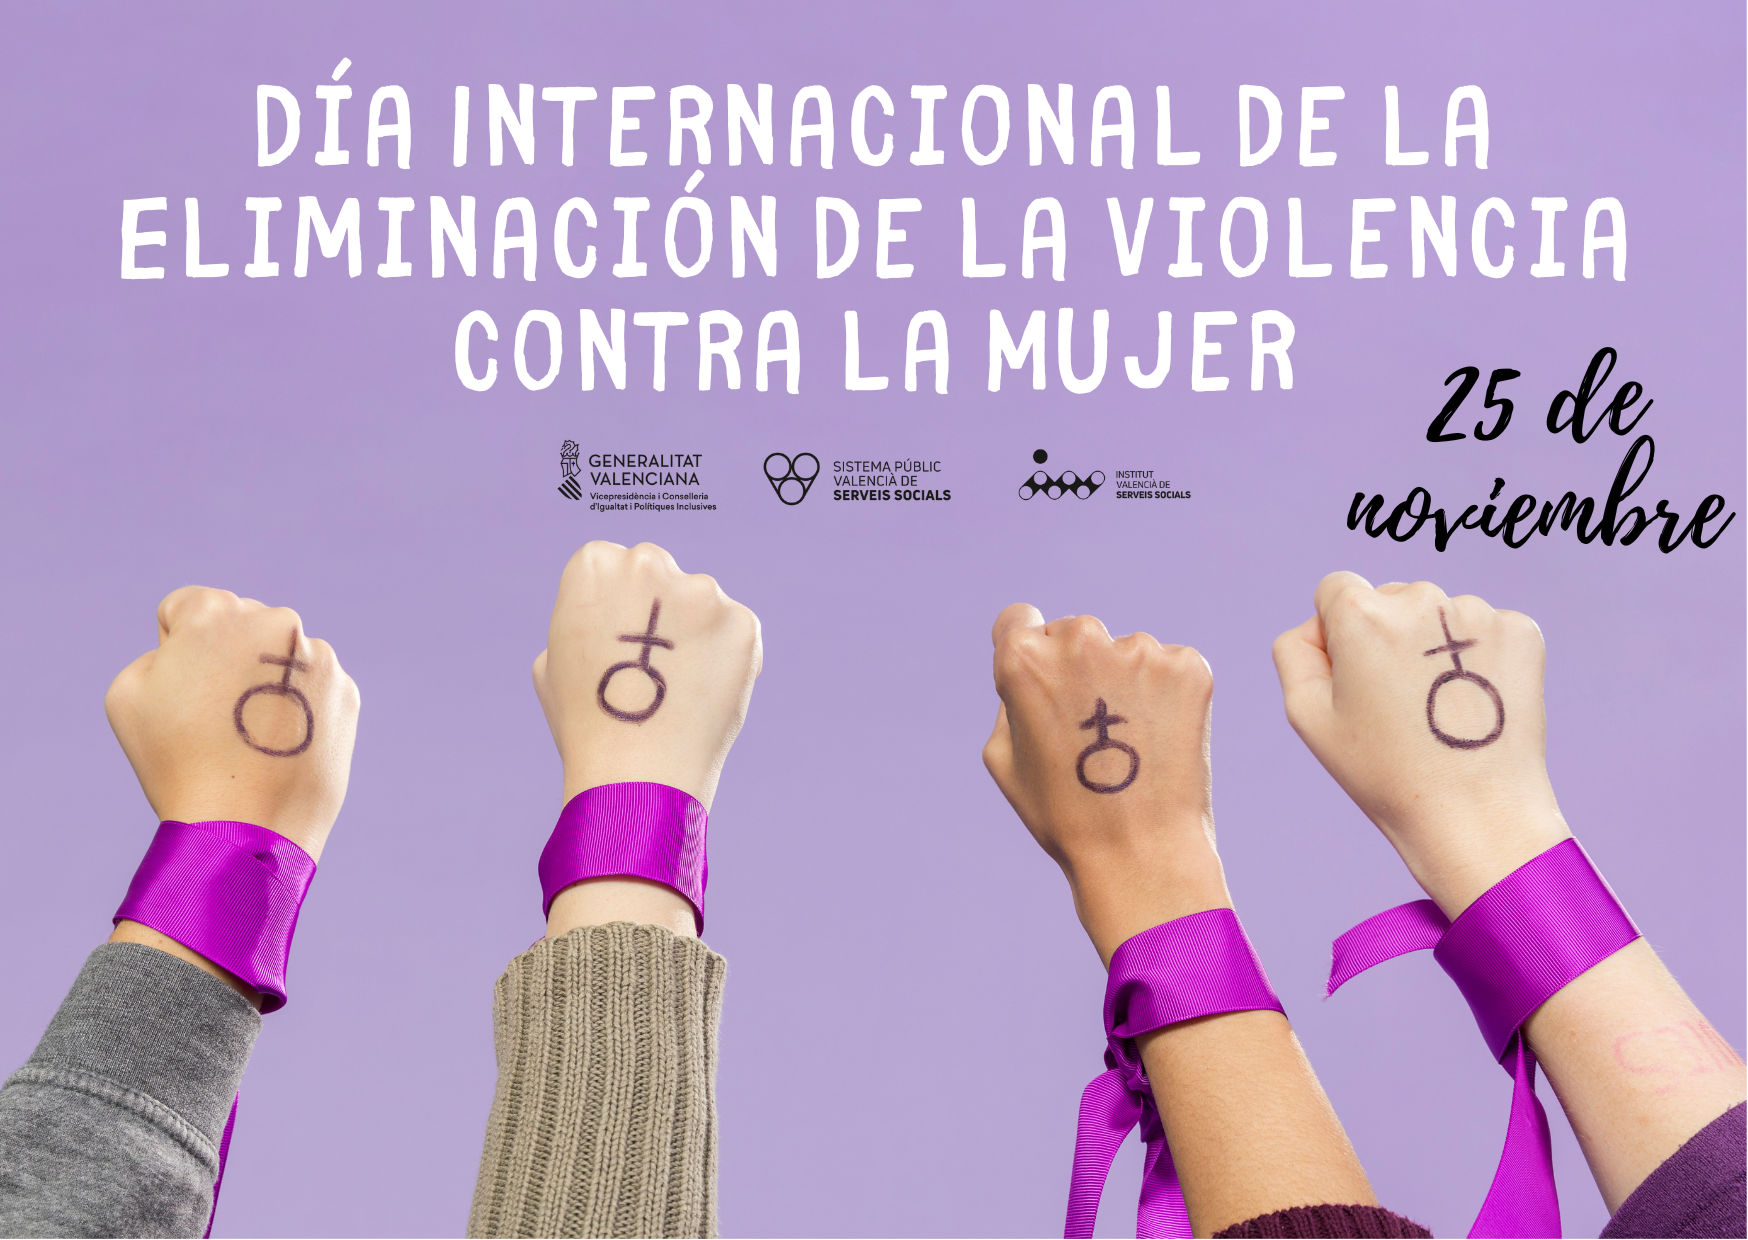 Día Internacional para la Eliminación de la Violencia contra las Mujeres